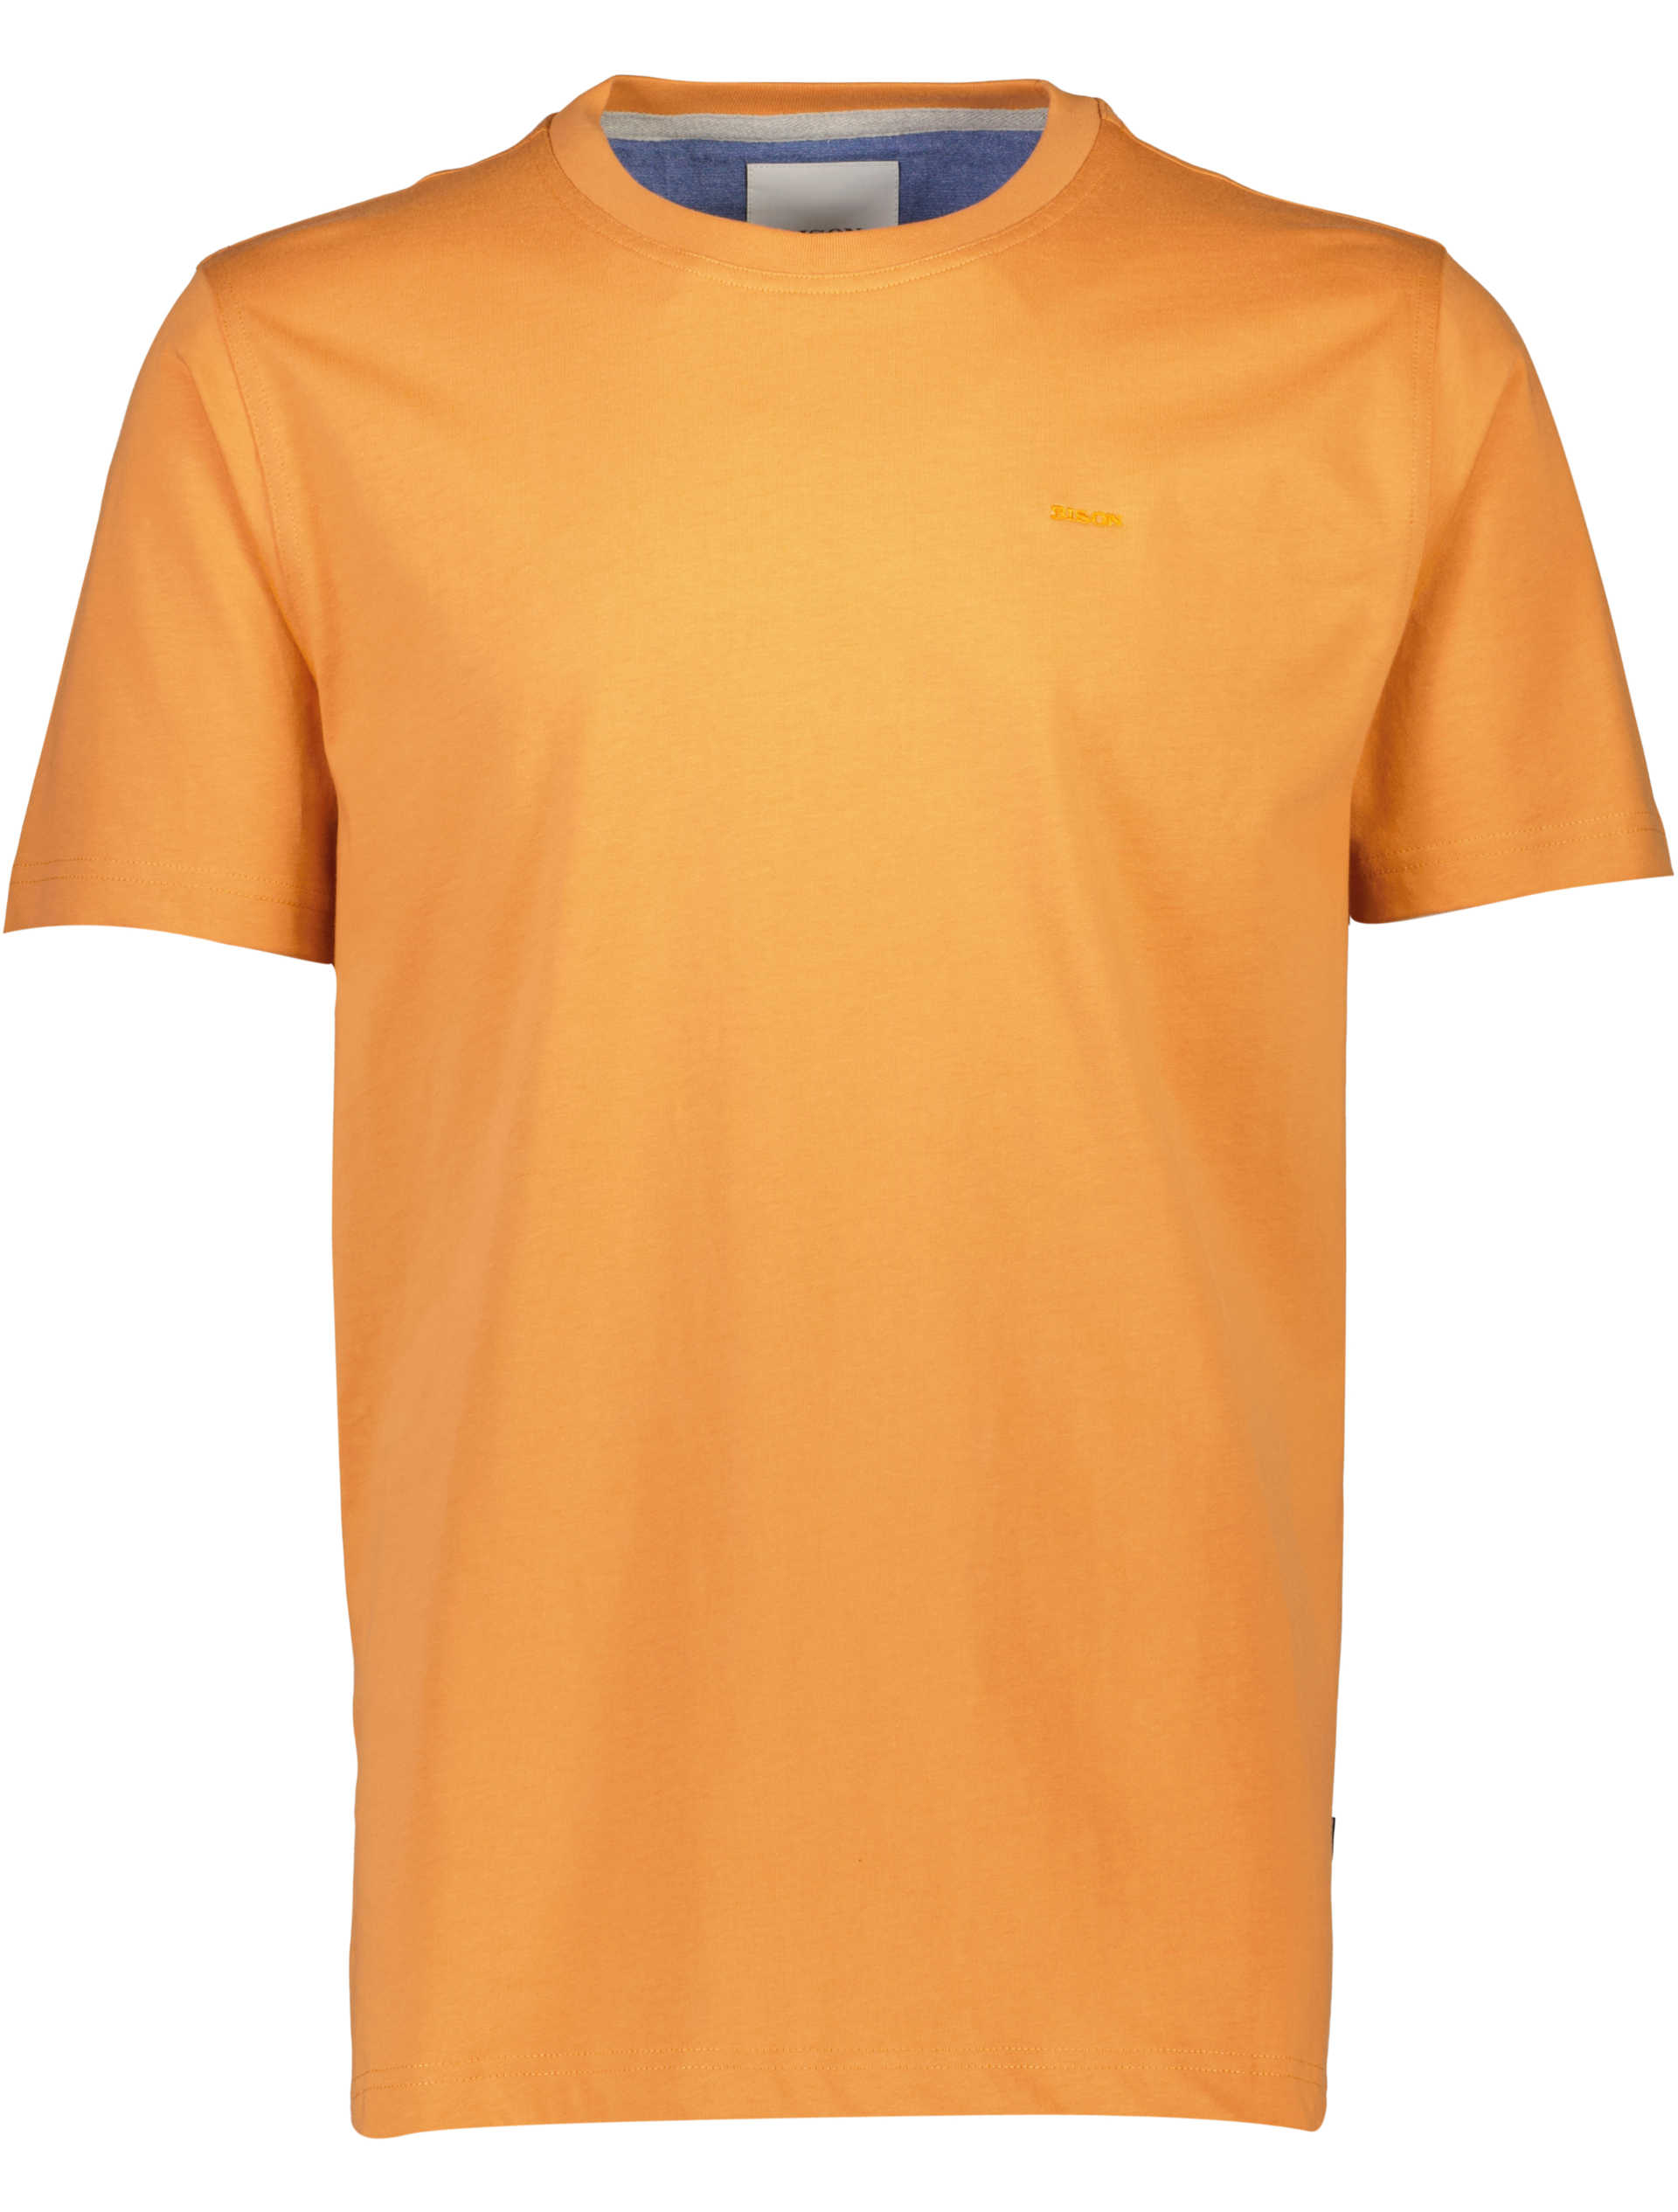 Bison T-shirt orange / lt orange 224